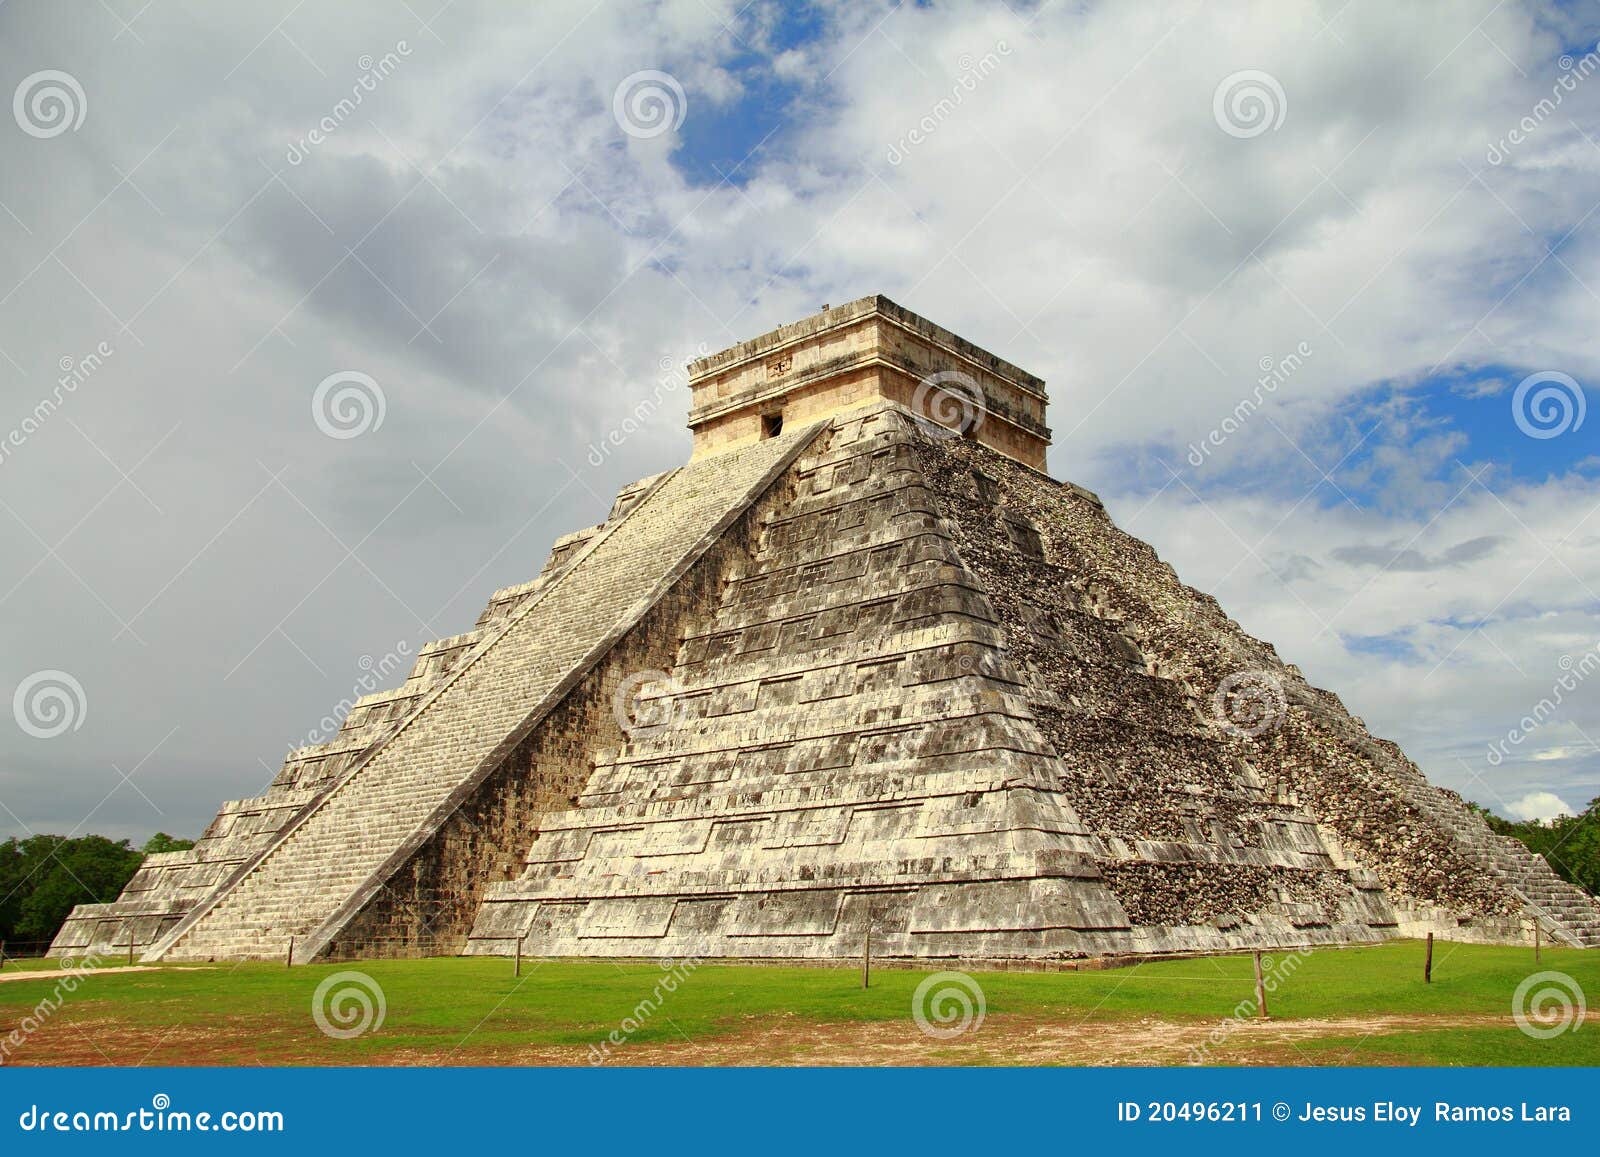 chichenitza pyramids near merida in yucatan mexico ii